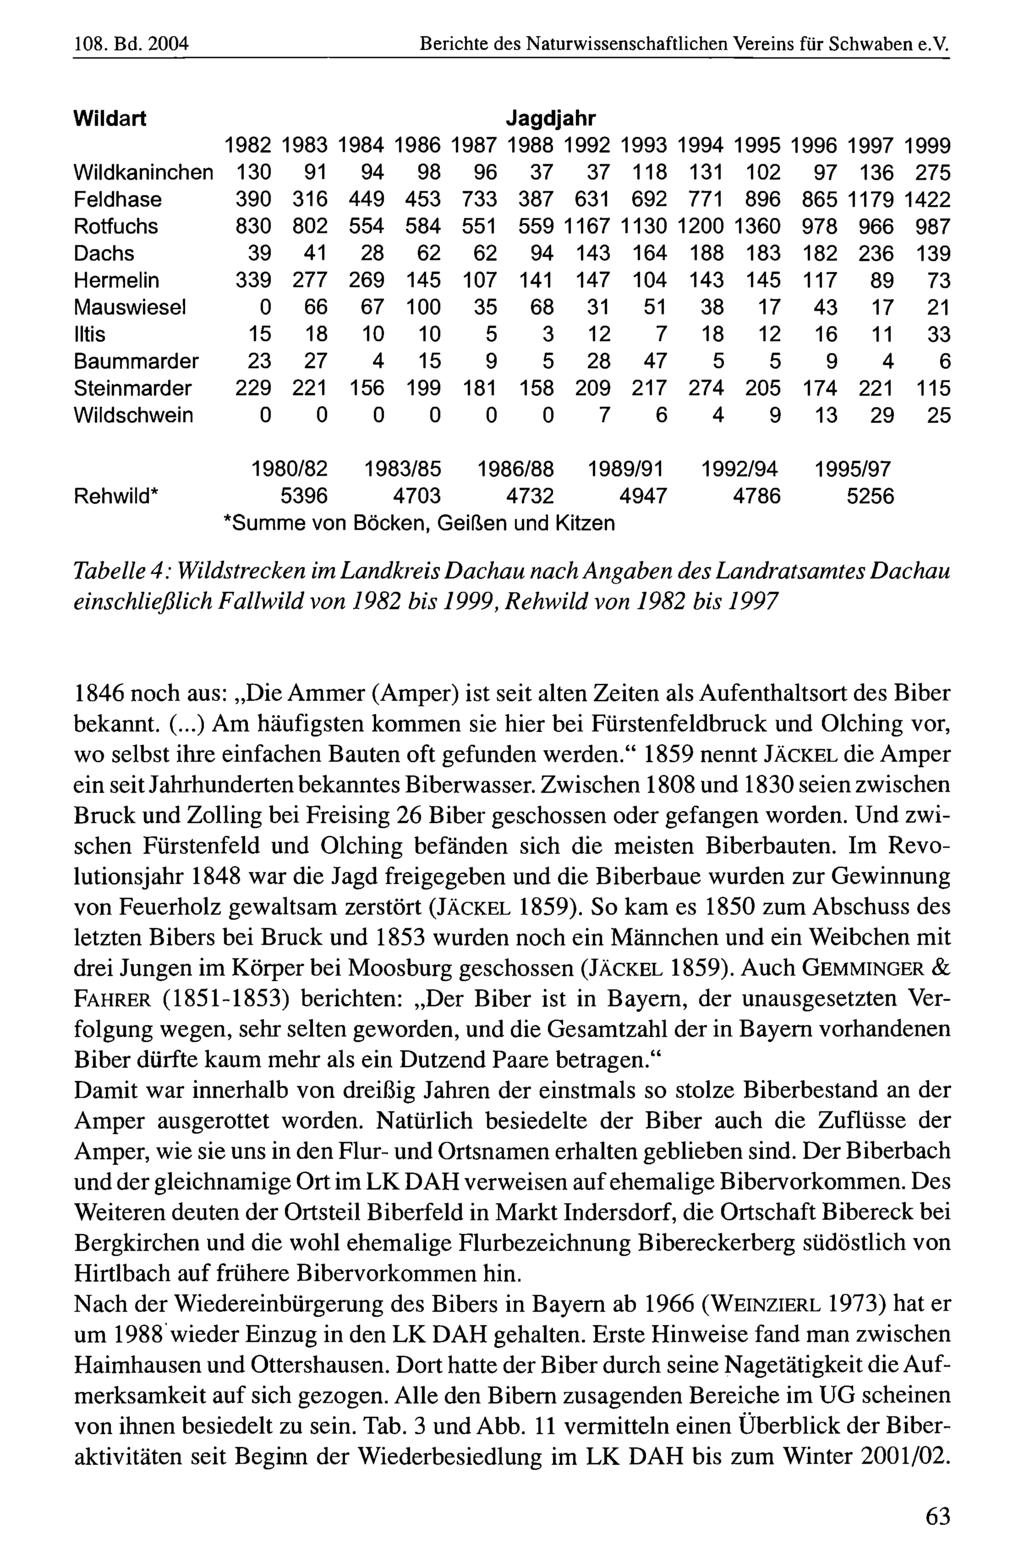 108. Bd. 2004 Naturwissenschaftlicher Verein Berichte für Schwaben, des Naturwissenschaftlichen download unter www.biologiezentrum.at Vereins für Schwaben e.v.